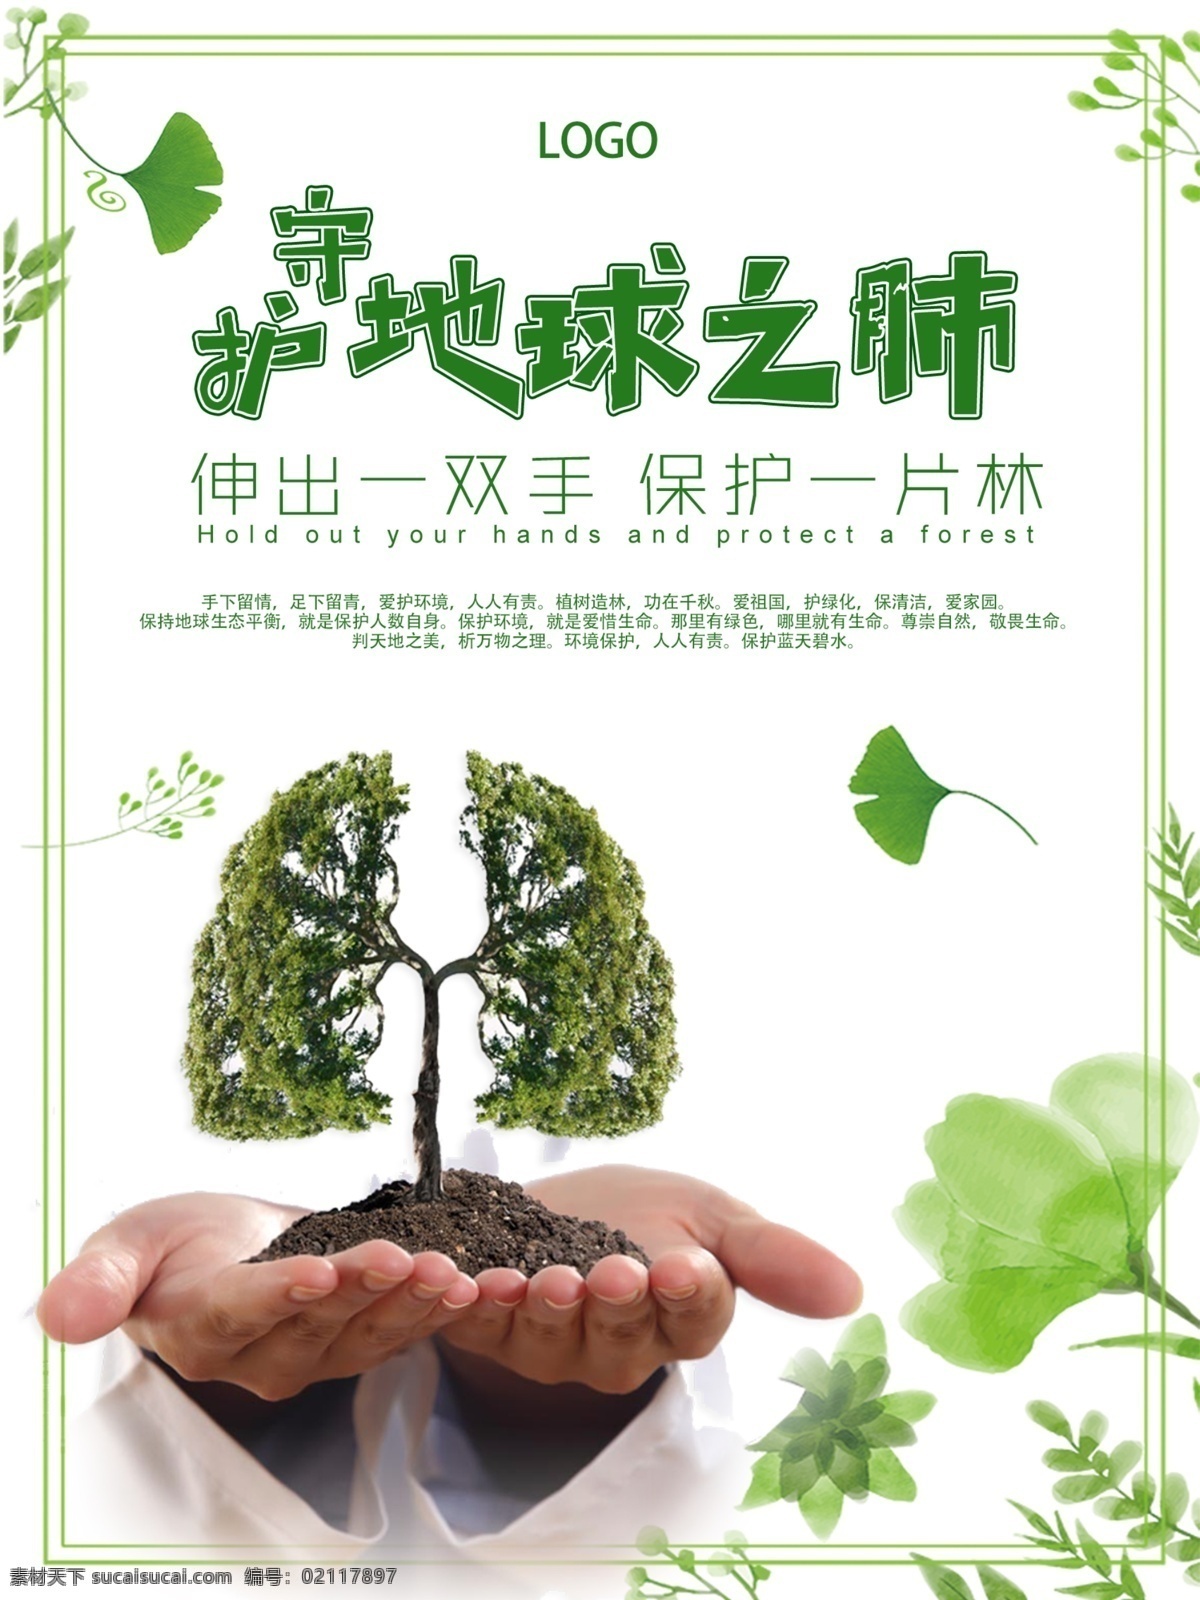 守护 地球 肺 爱护 环境 公益 海报 地球之肺 爱护环境 银杏叶 绿色 手捧树 伸出一双手 保护一片林